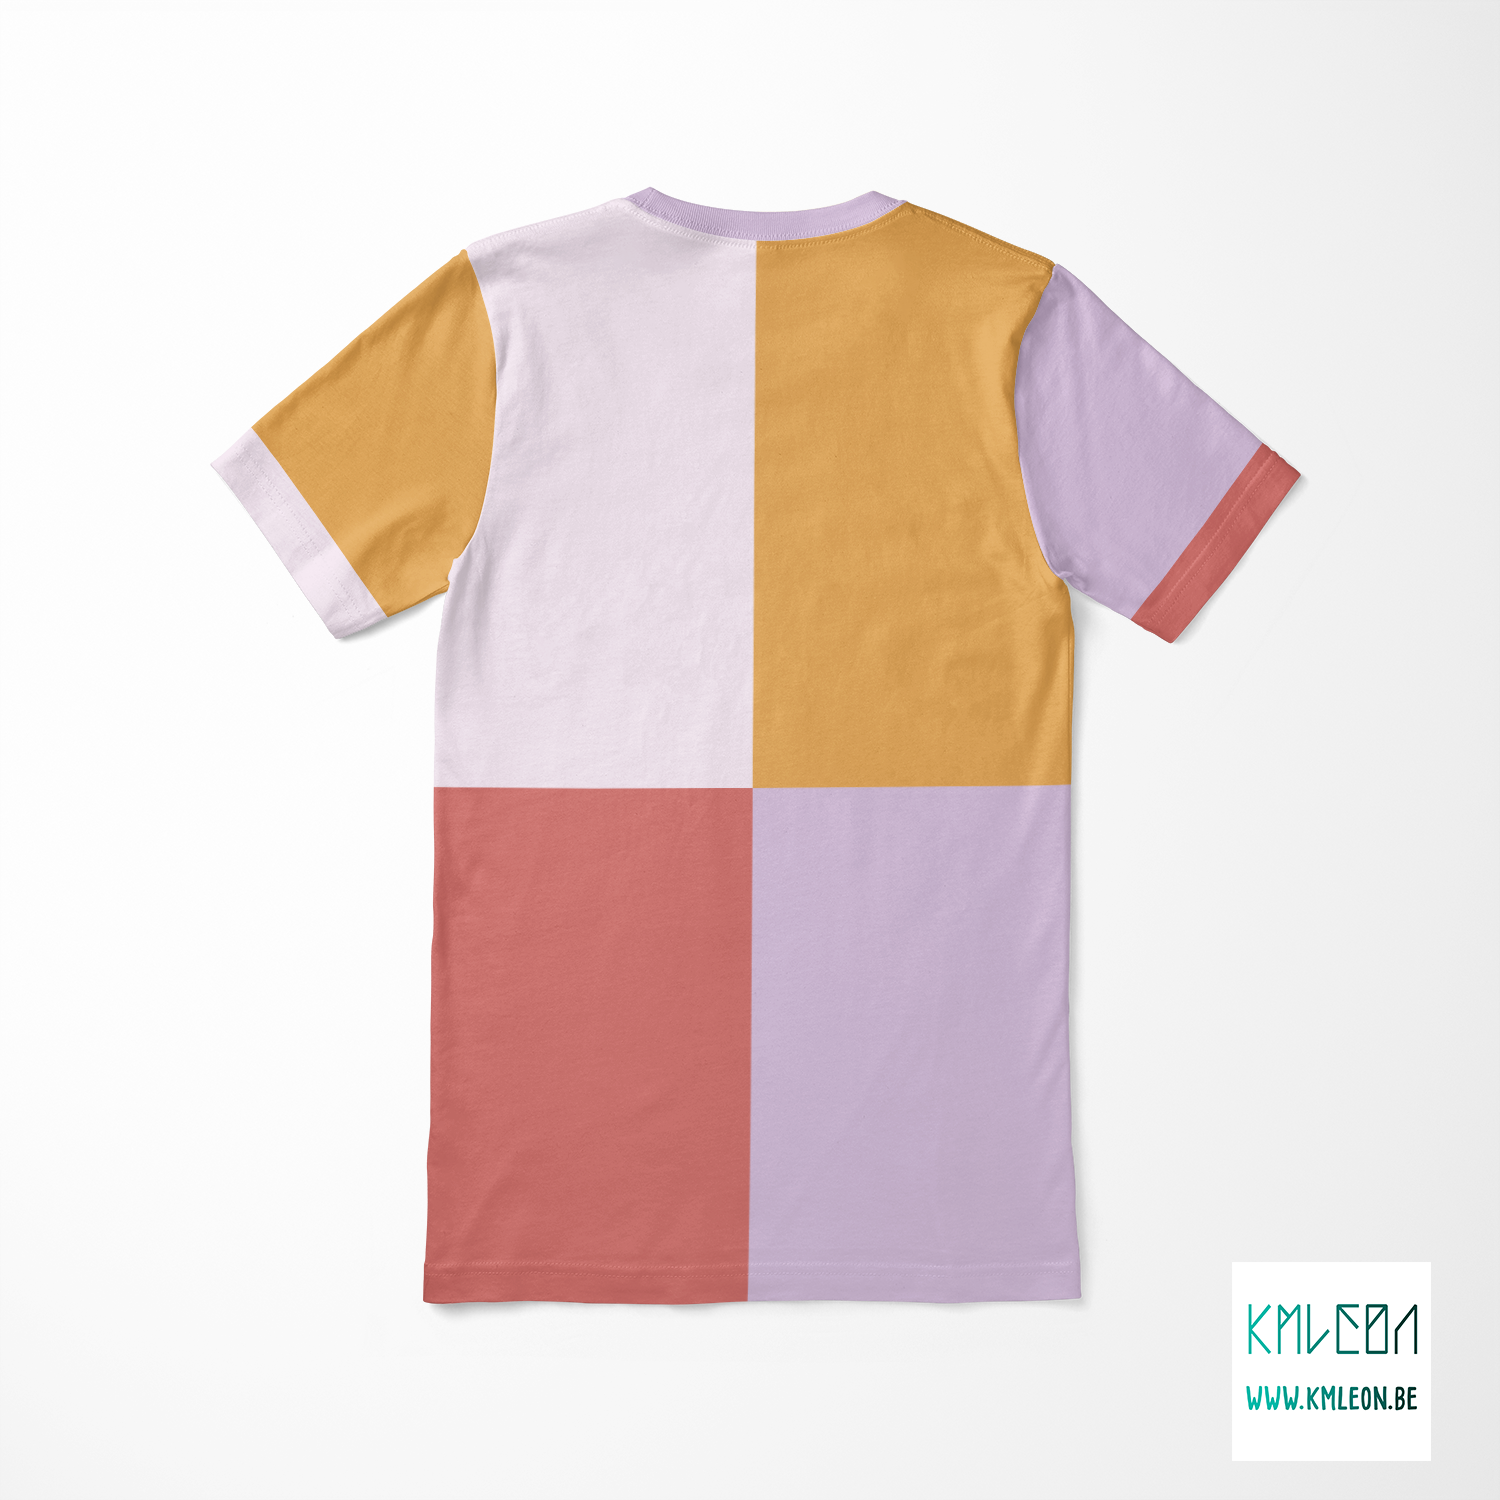 Colourblock cut and sew t-shirt